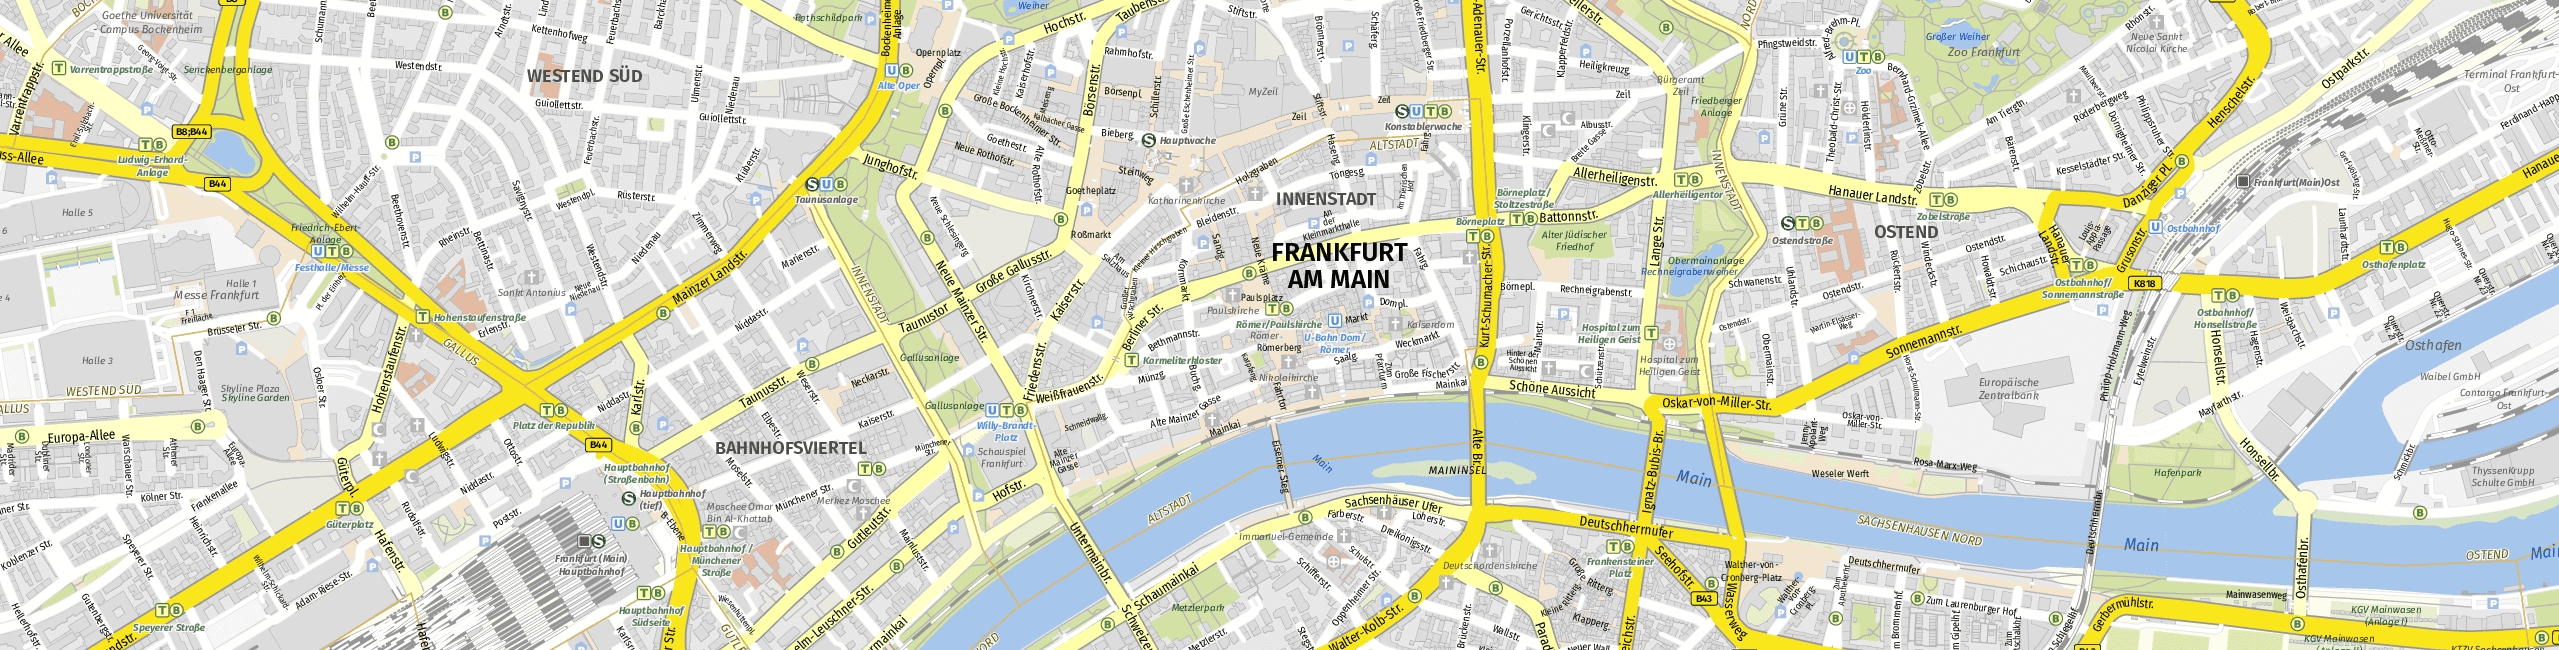 Stadtplan Frankfurt zum Downloaden.